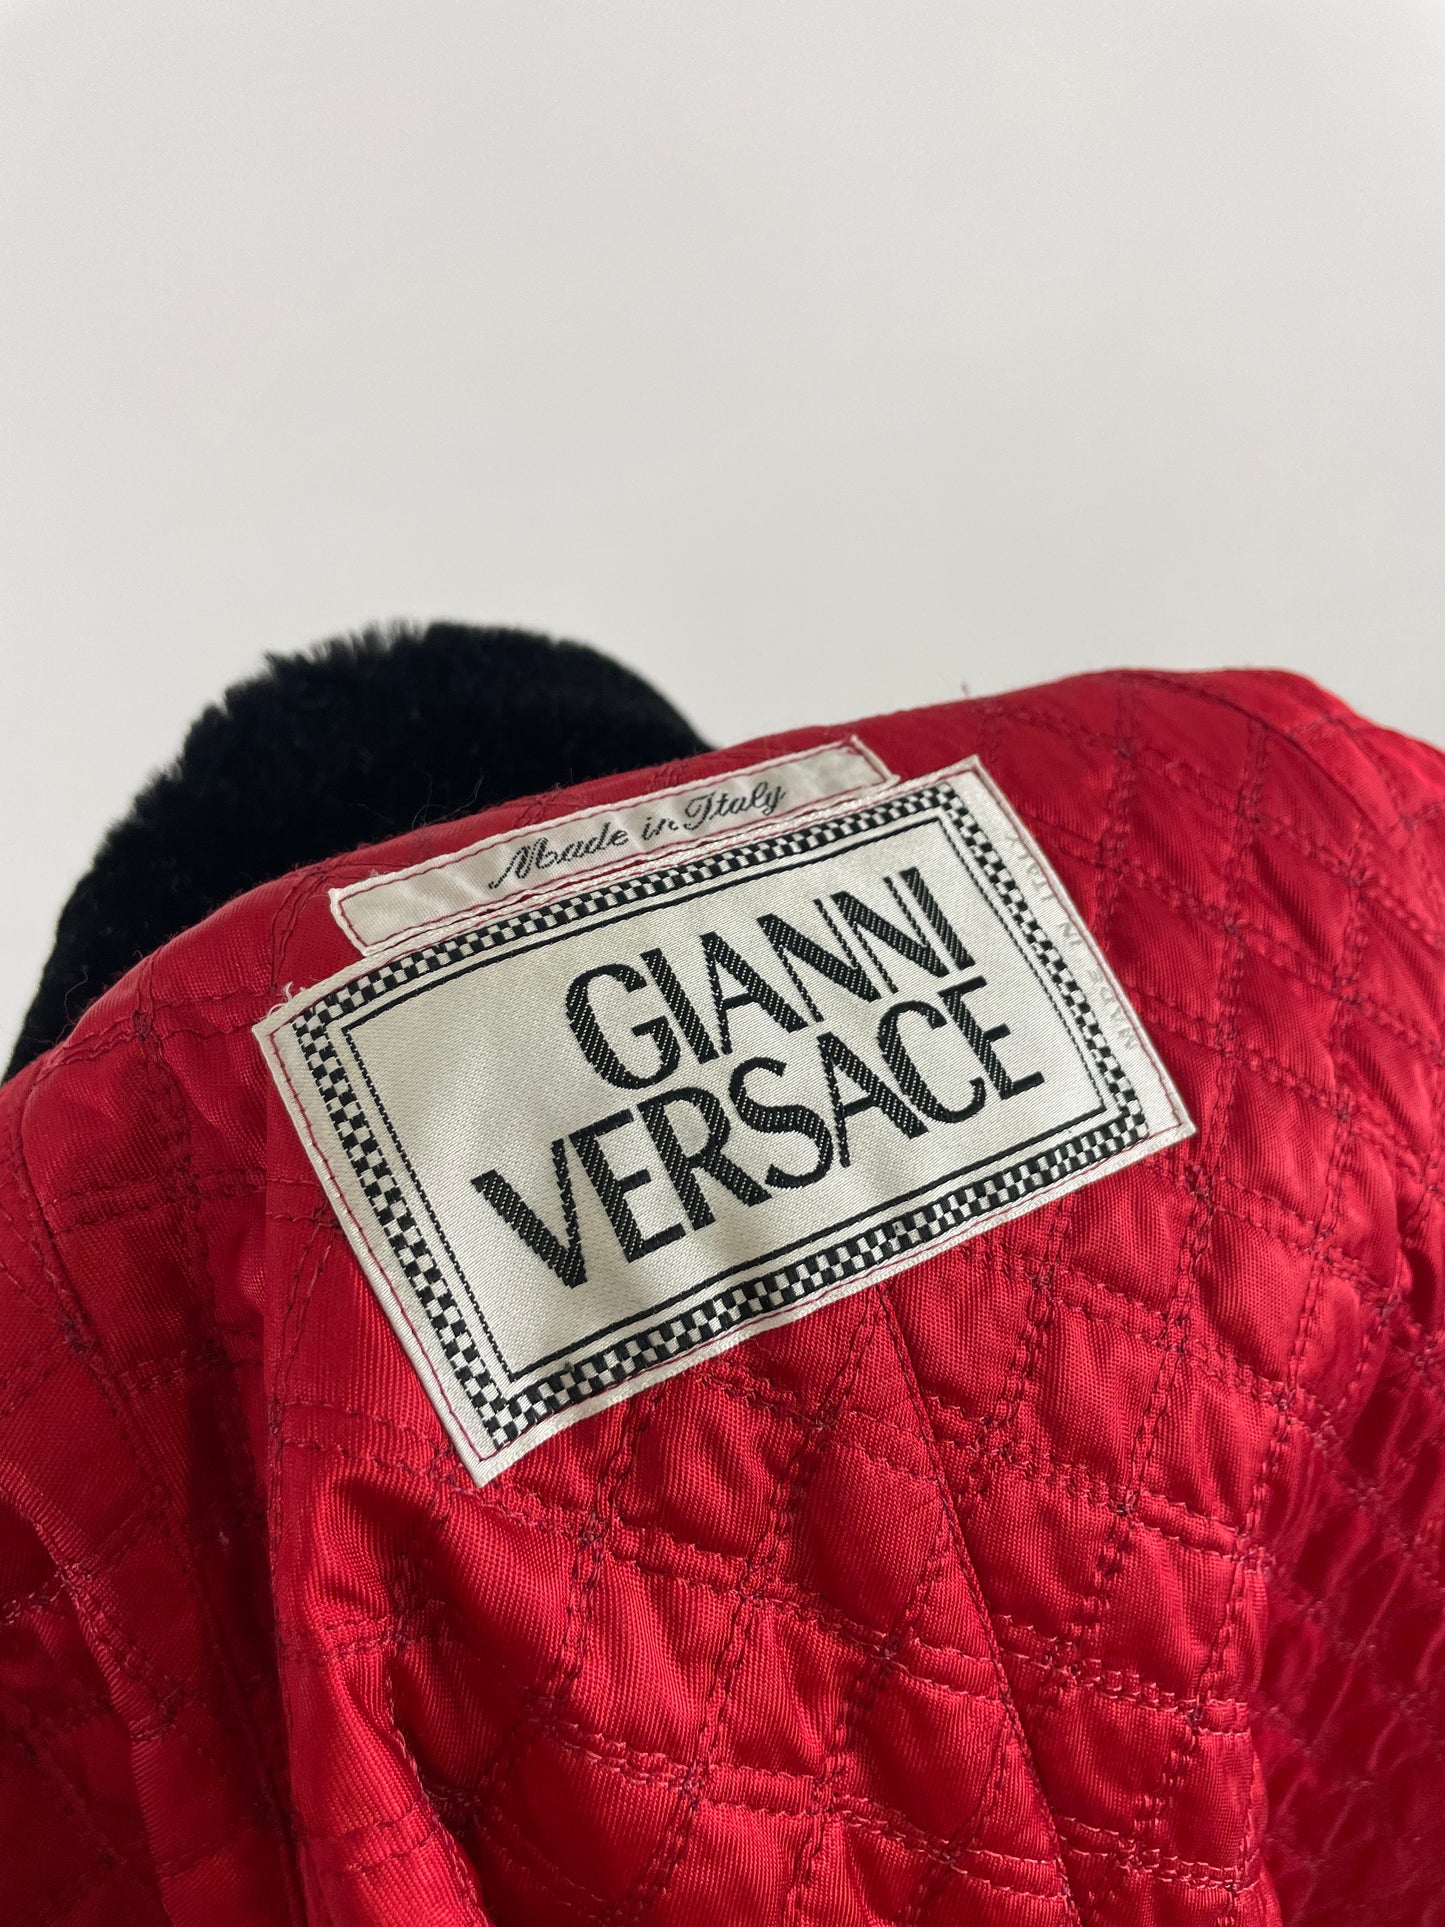 Mantel von Gianni Versace, 1990er Jahre